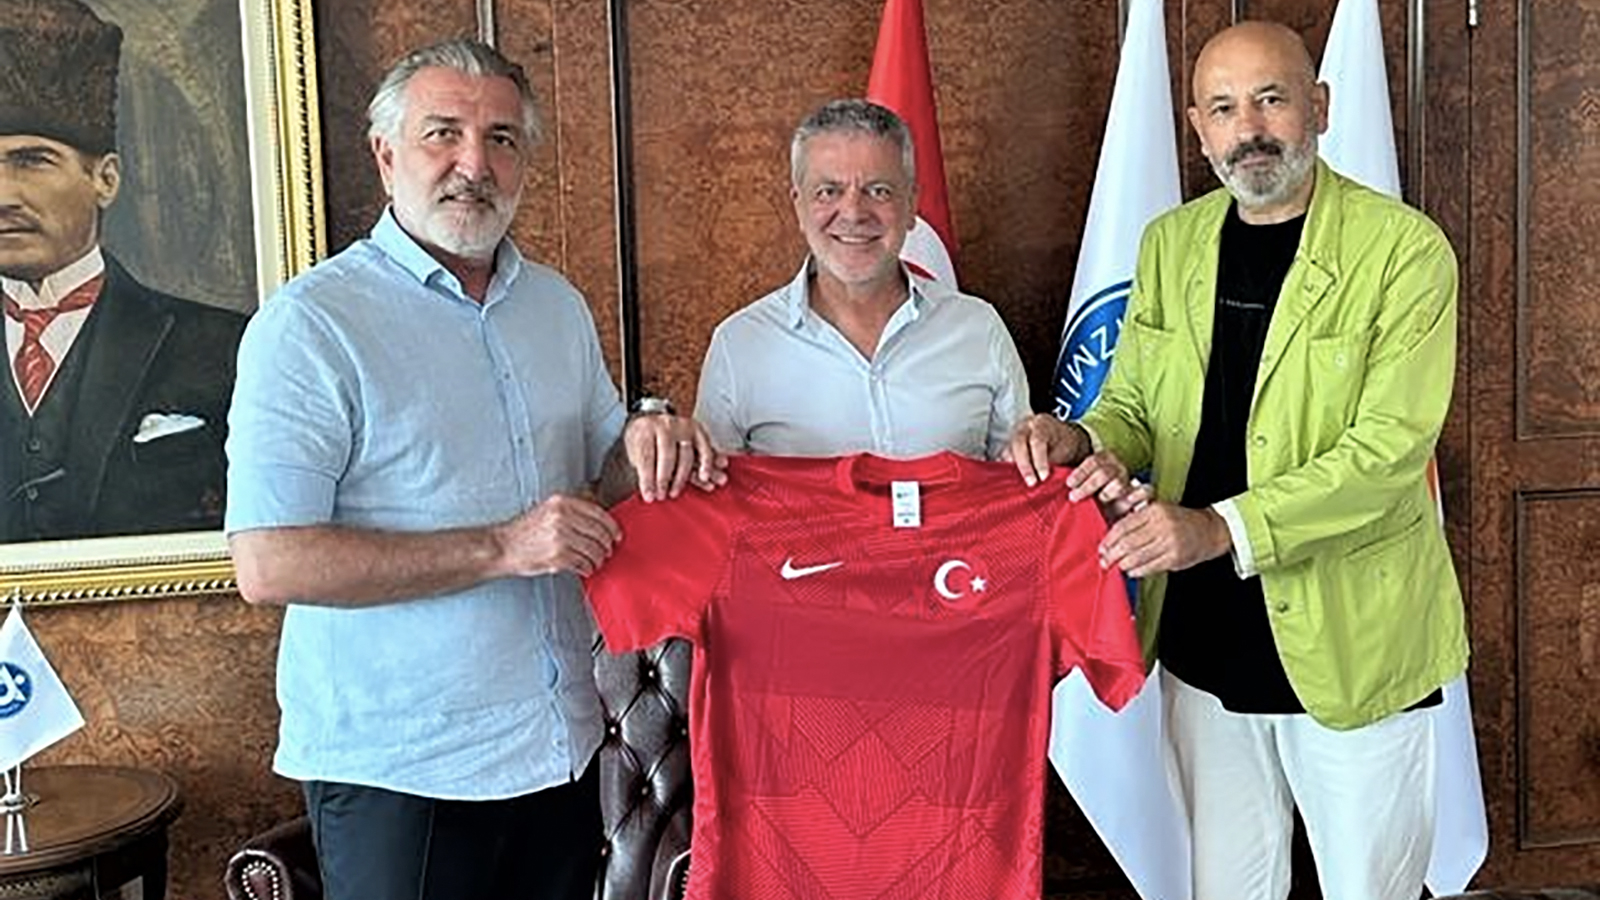 ürkiye Futbol Federasyonu'nun (TFF) yönetim kurulu üyelerinden Talat Papatya,